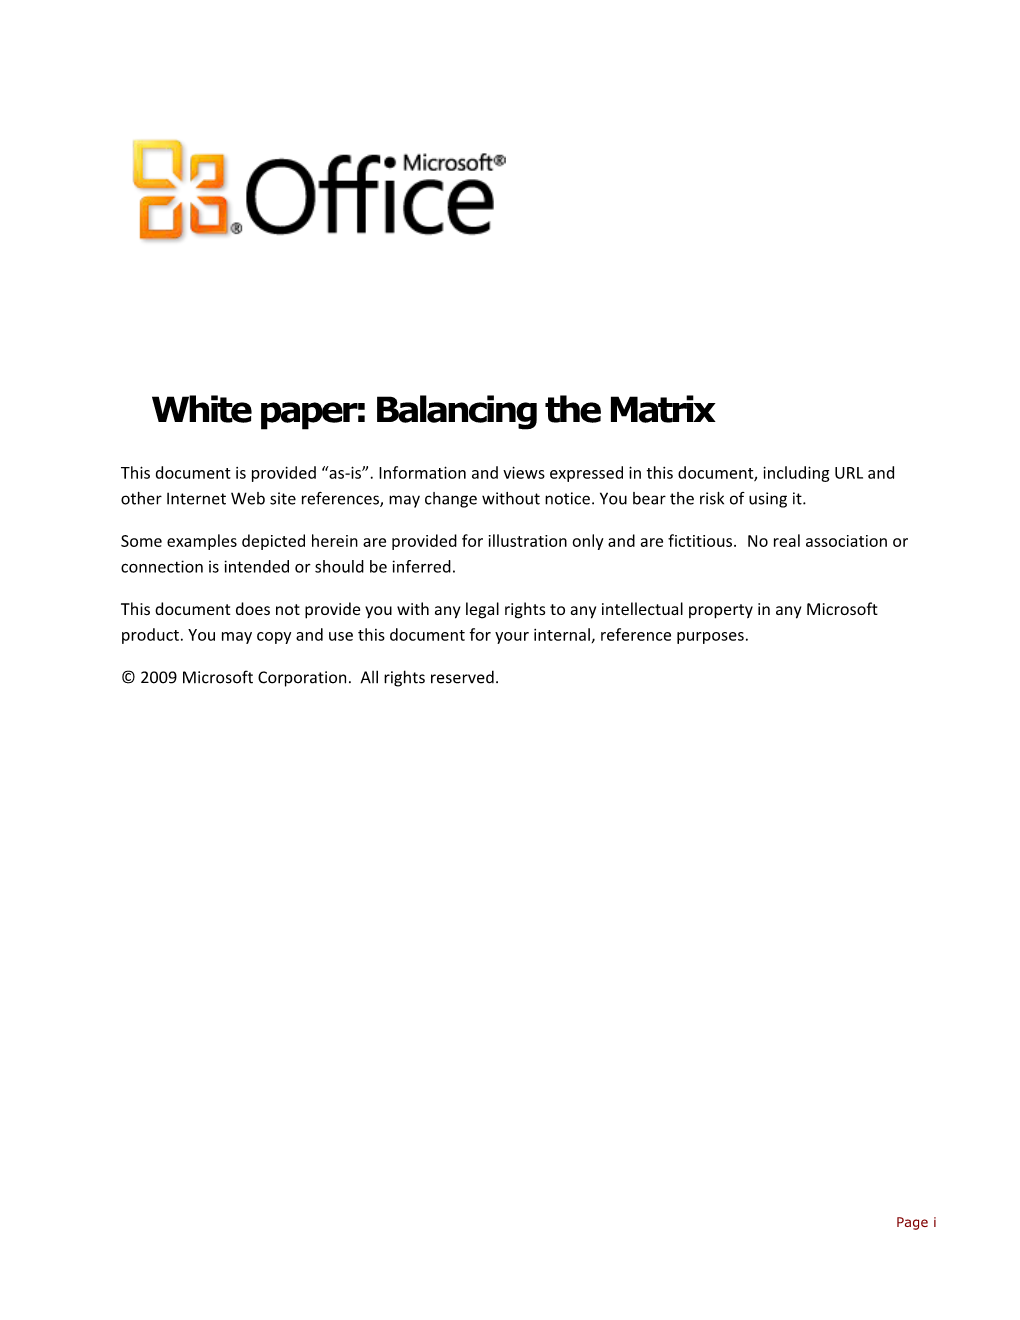 Whitepaper: Balancing the Matrix